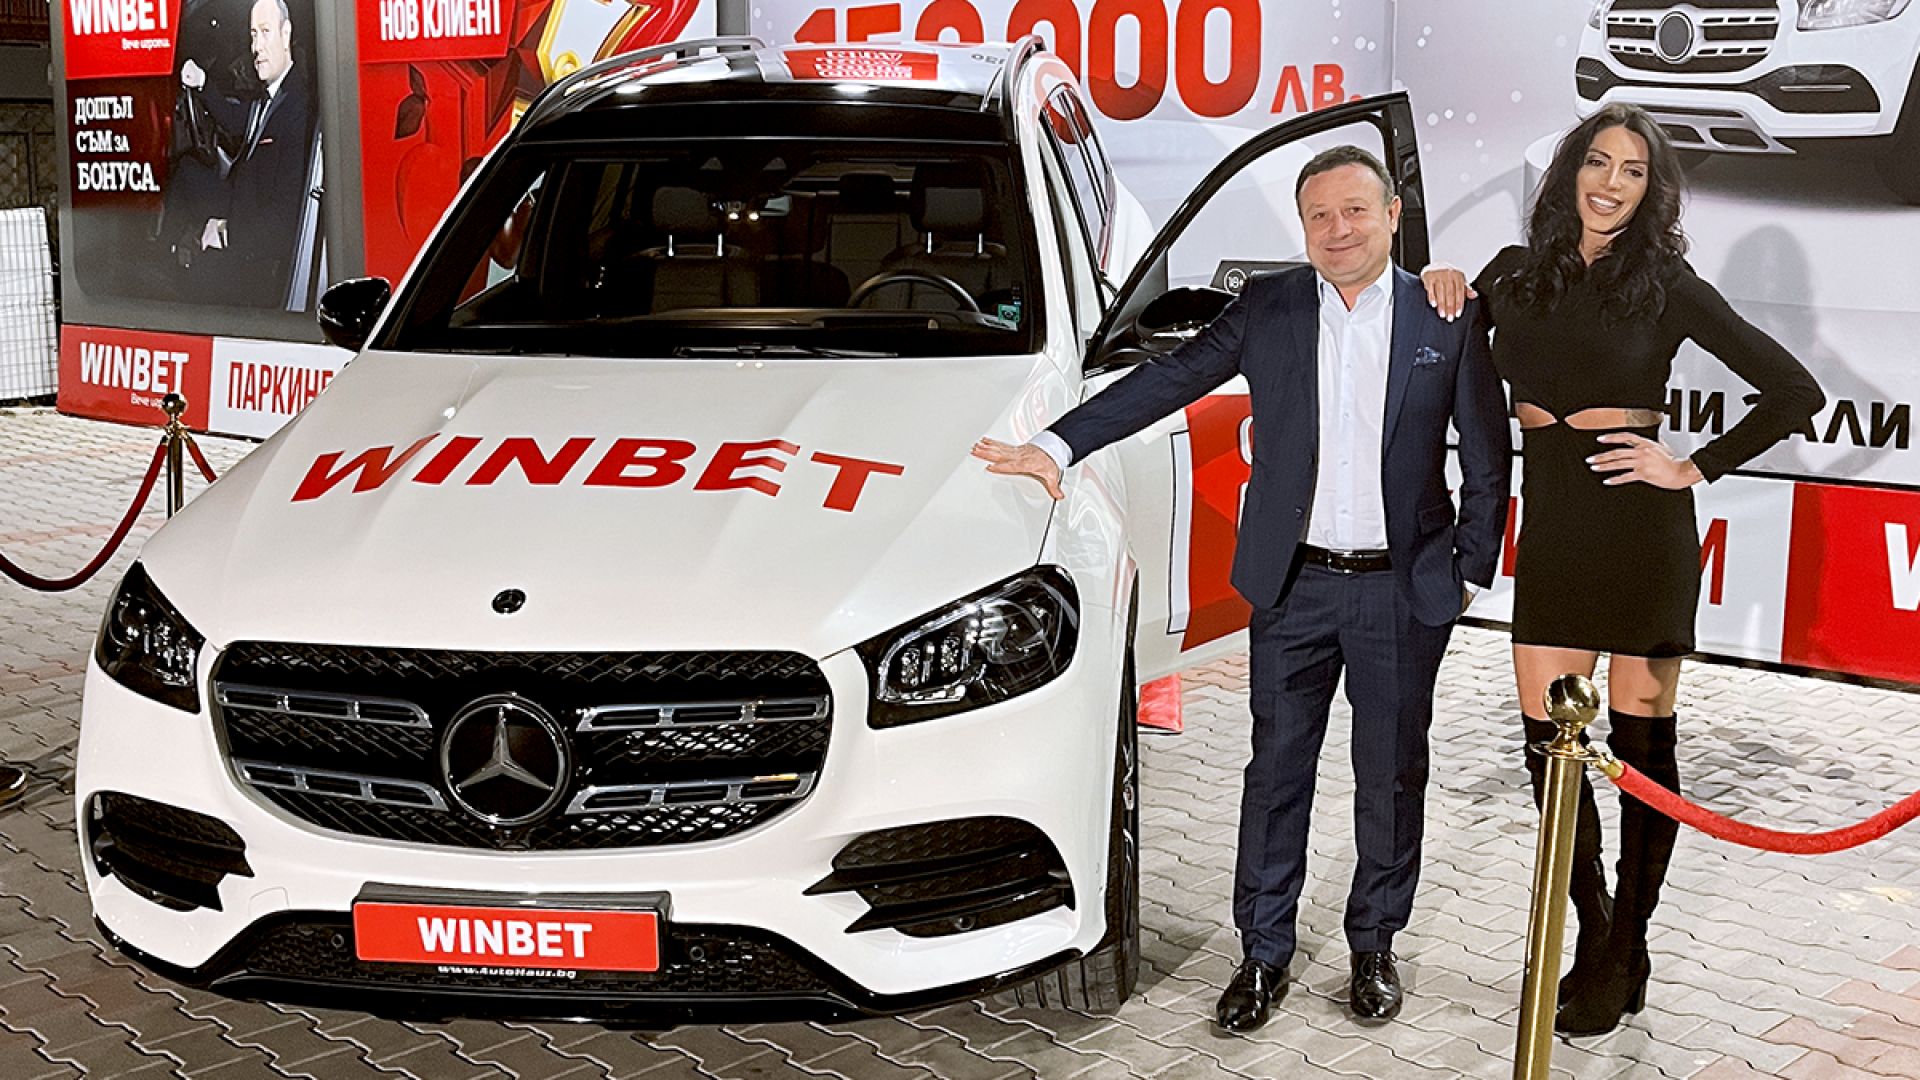 Късметлия от Варна спечели Mercedes-Benz GLS 400 в GRANDE BONUS играта на игрални зали WINBET 